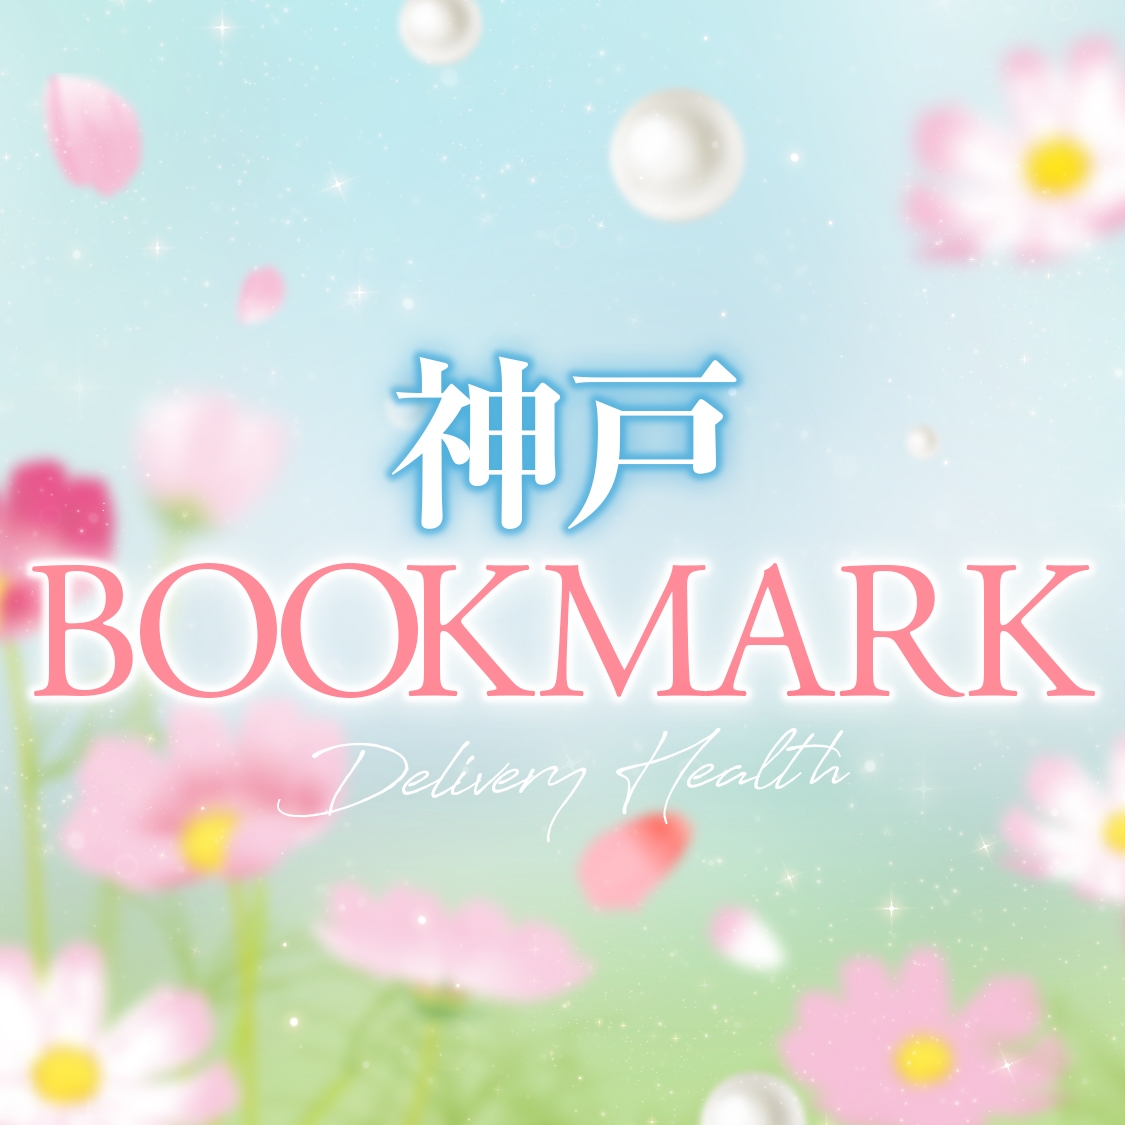 神戸BOOKMARK(ブックマーク)